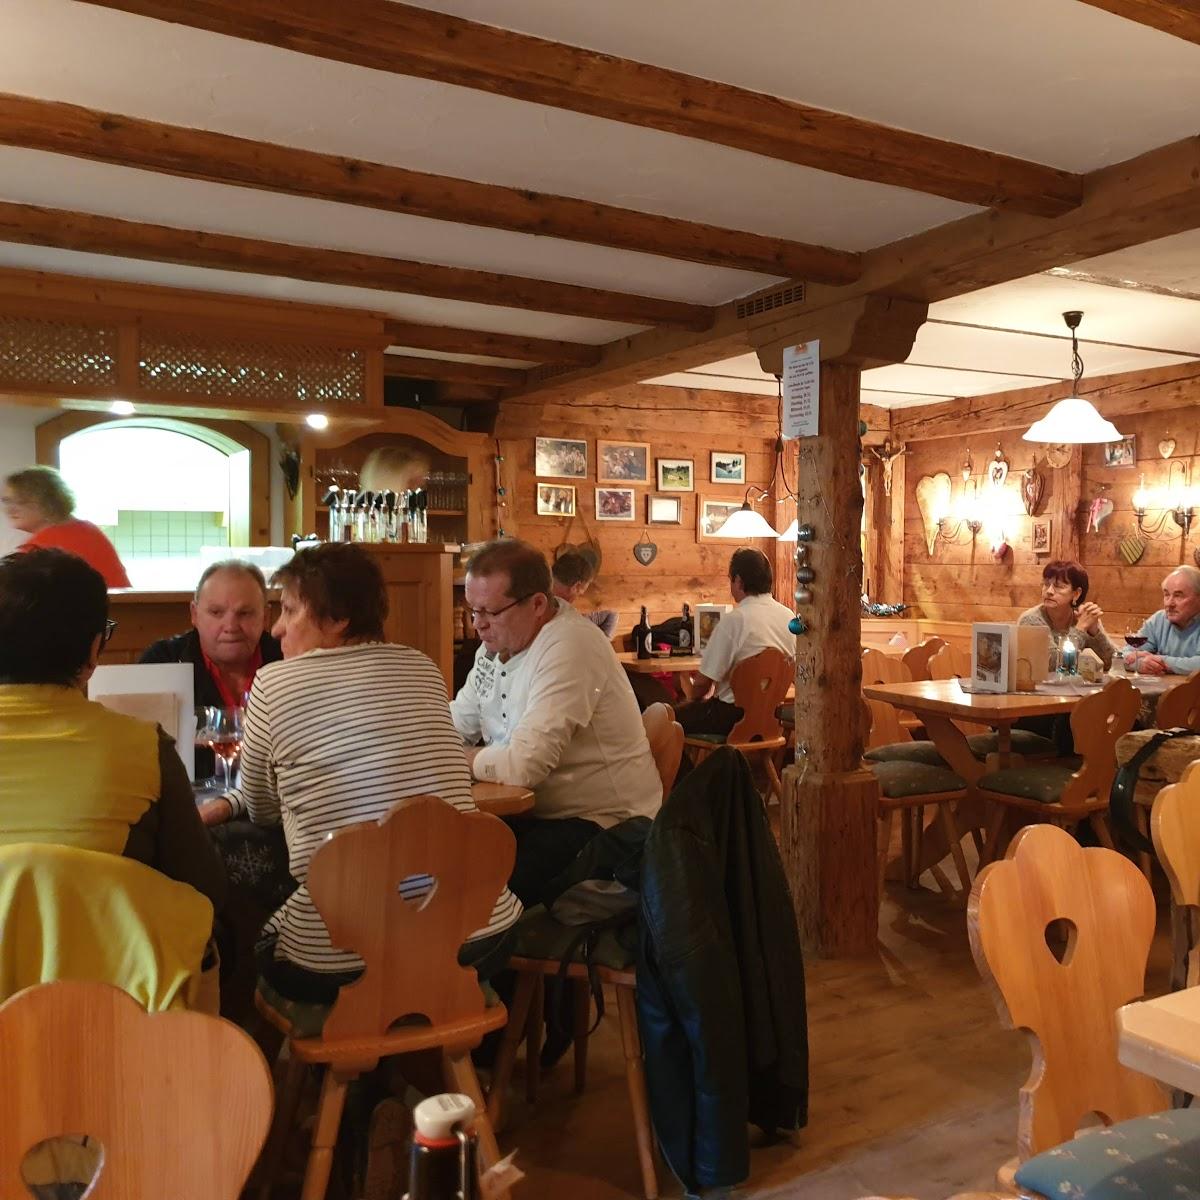 Restaurant "Zur Höll" in Oberstaufen